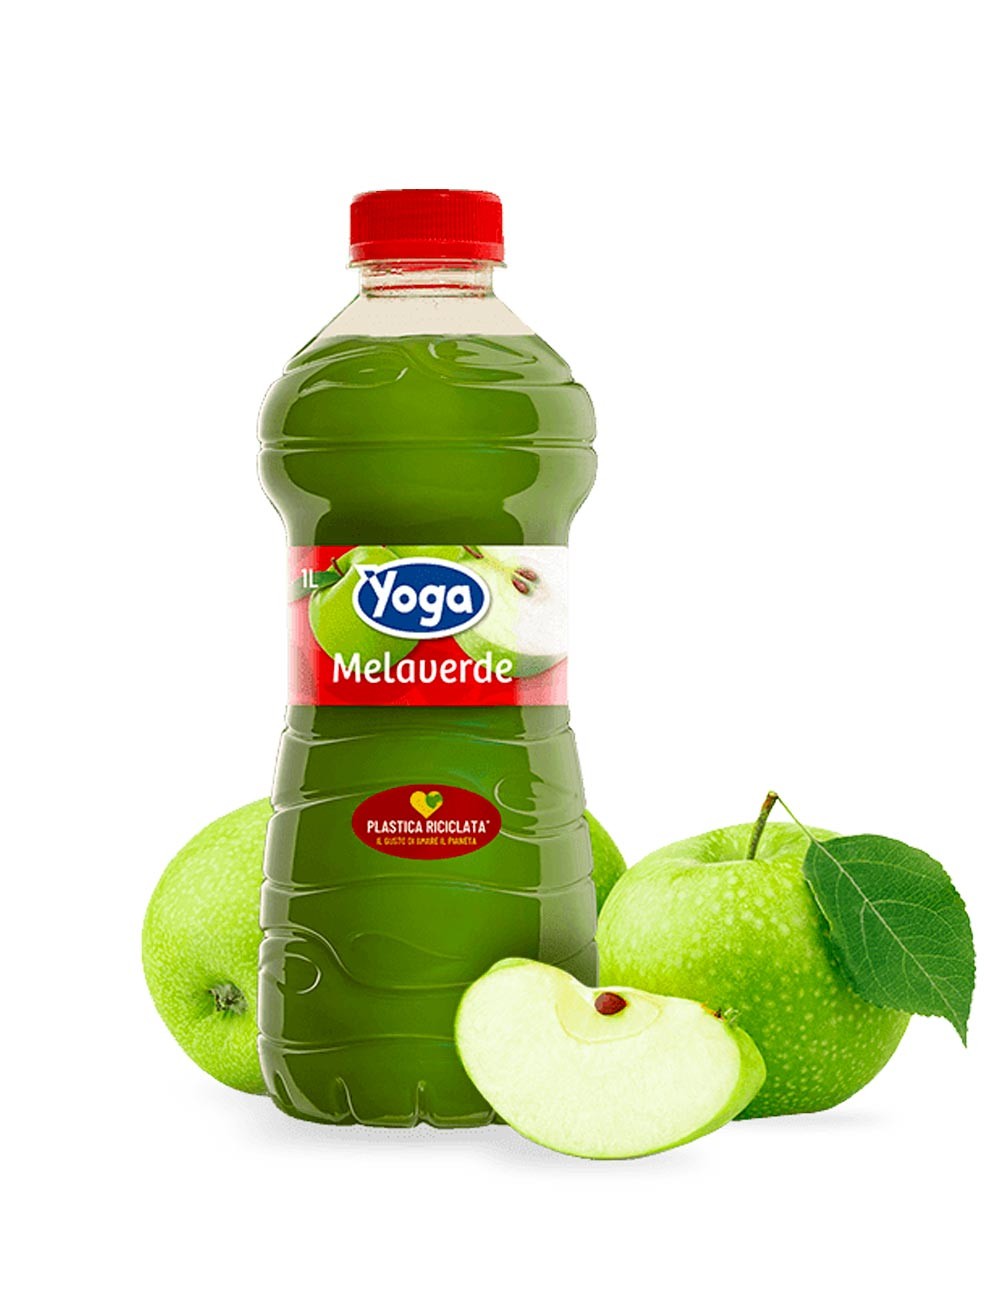 Grüner Apfel Yoga 6 ab 1L Stk. Saft